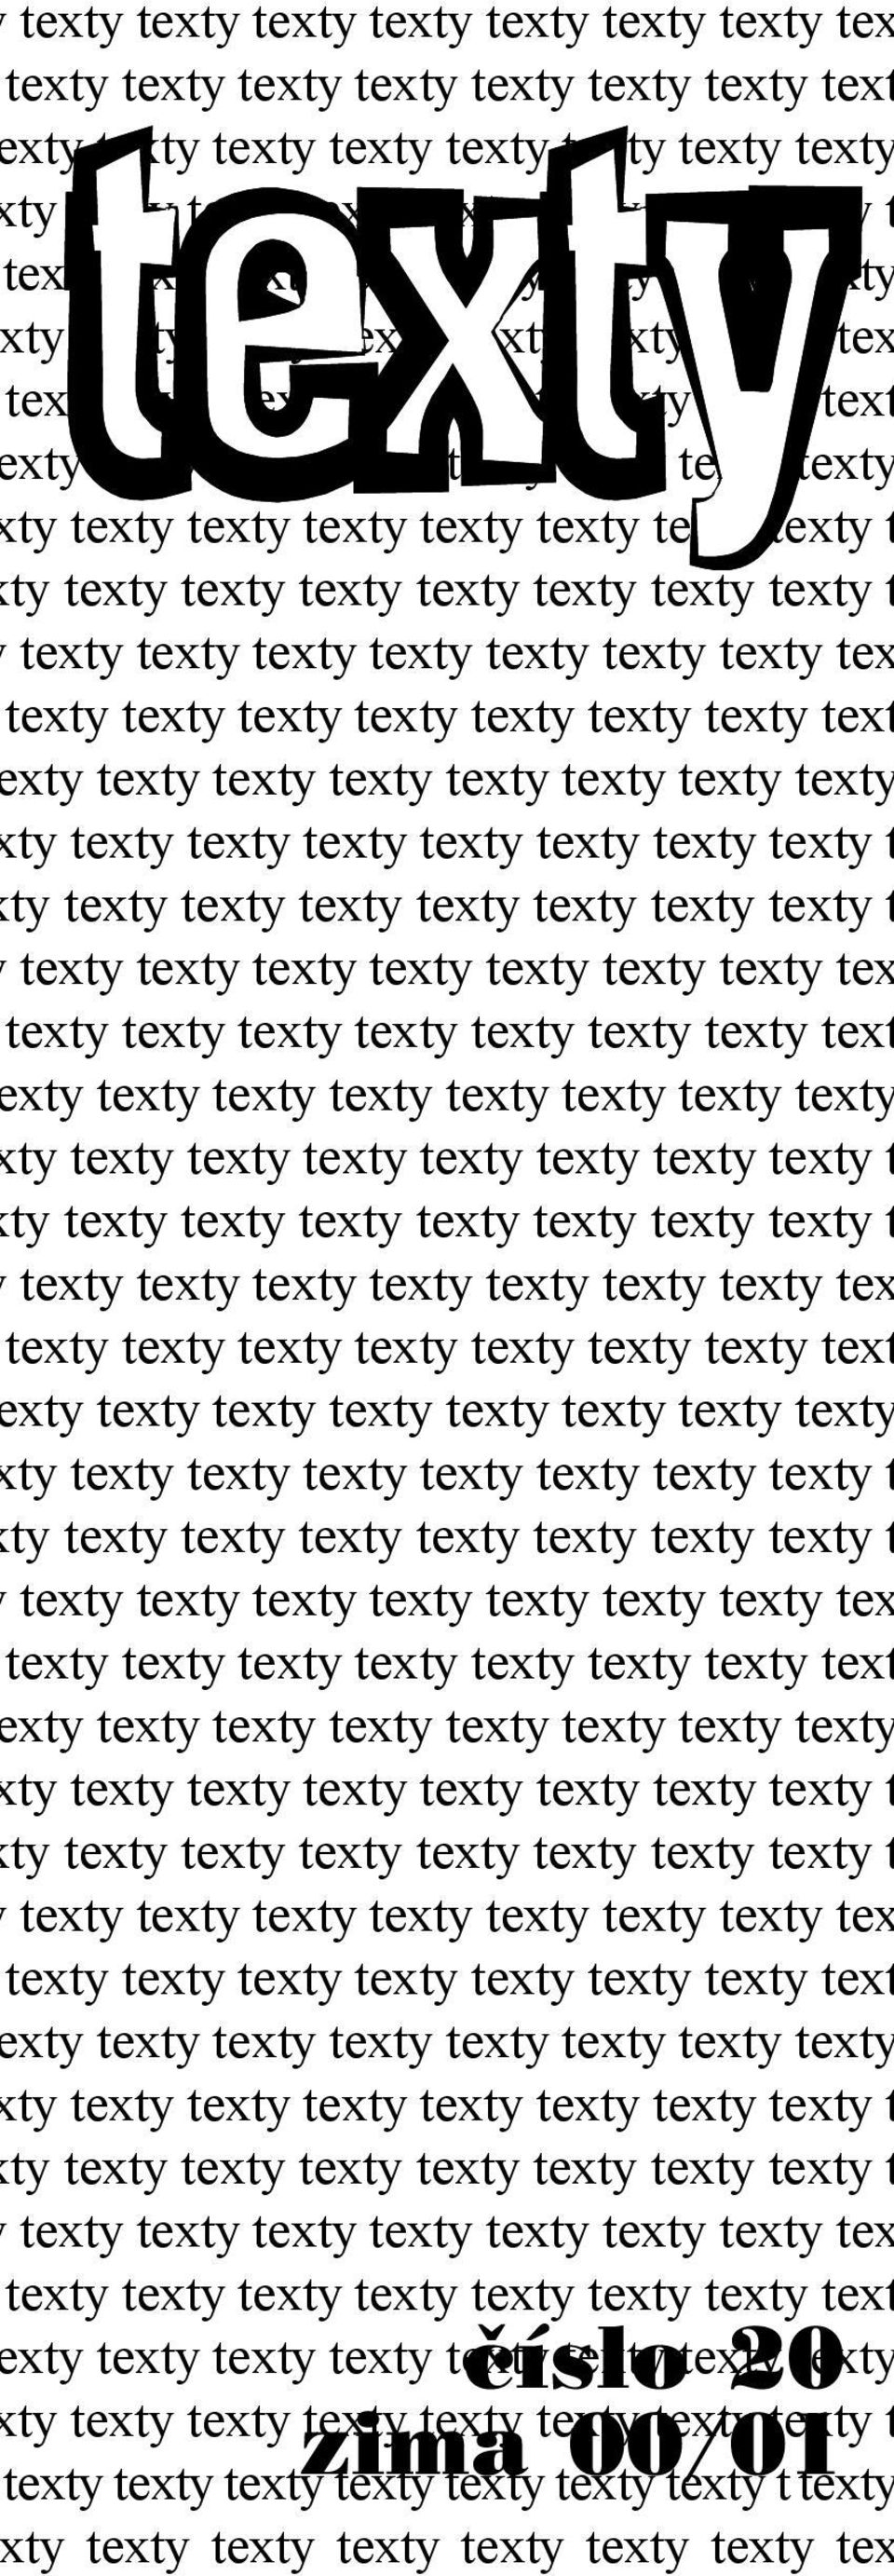 texty texty texty text xty texty texty texty texty texty texty texty texty texty  texty texty texty text xty texty texty texty texty texty texty texty texty texty  texty texty texty text xty texty